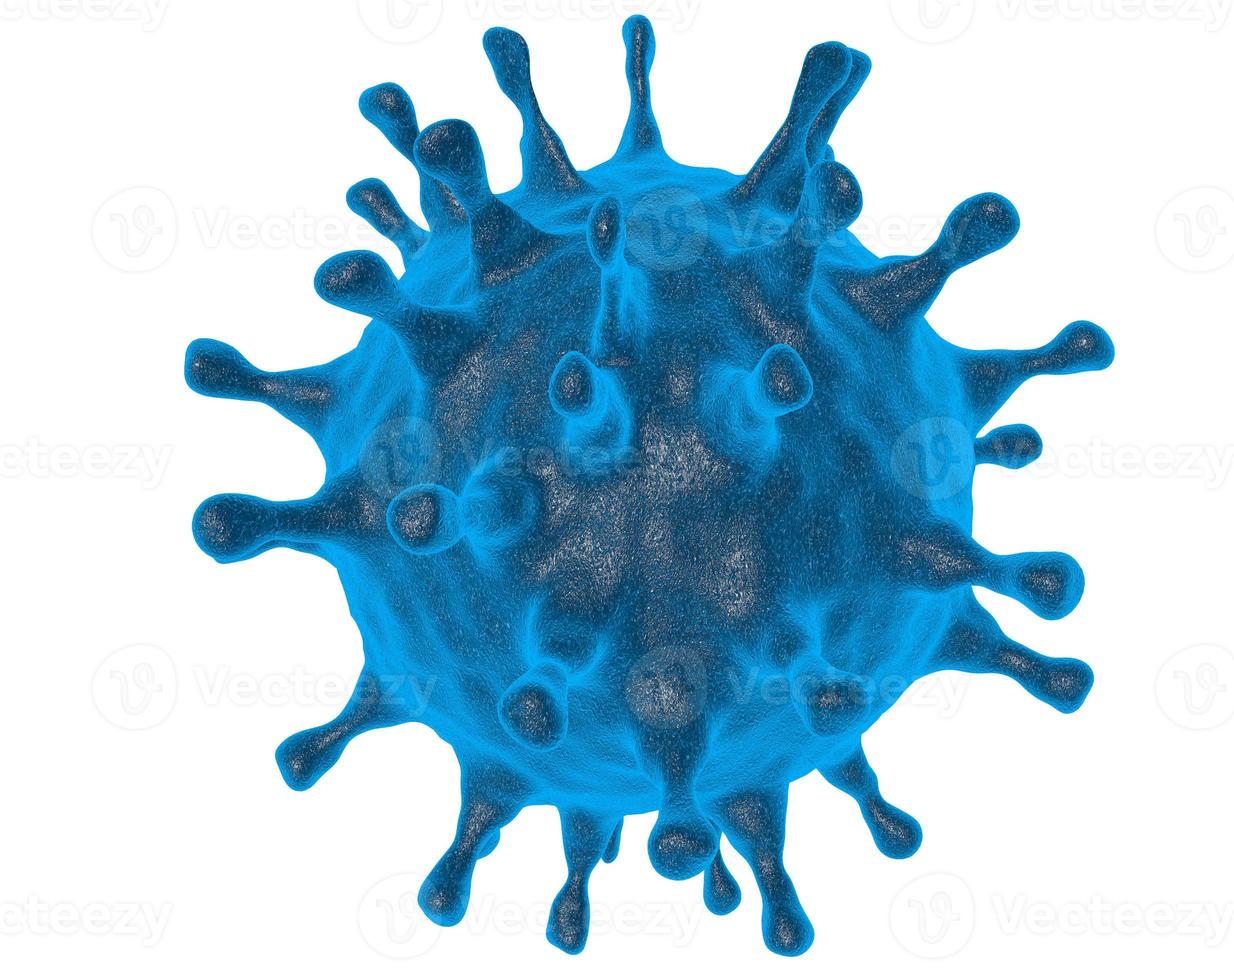 grippe-coronavirus über erdhintergrund konzept der heilungssuche und krankheitsverbreitung. 3D-Bild. Bild der Erde, bereitgestellt von der NASA. Elemente dieses Bildes, bereitgestellt von der NASA foto